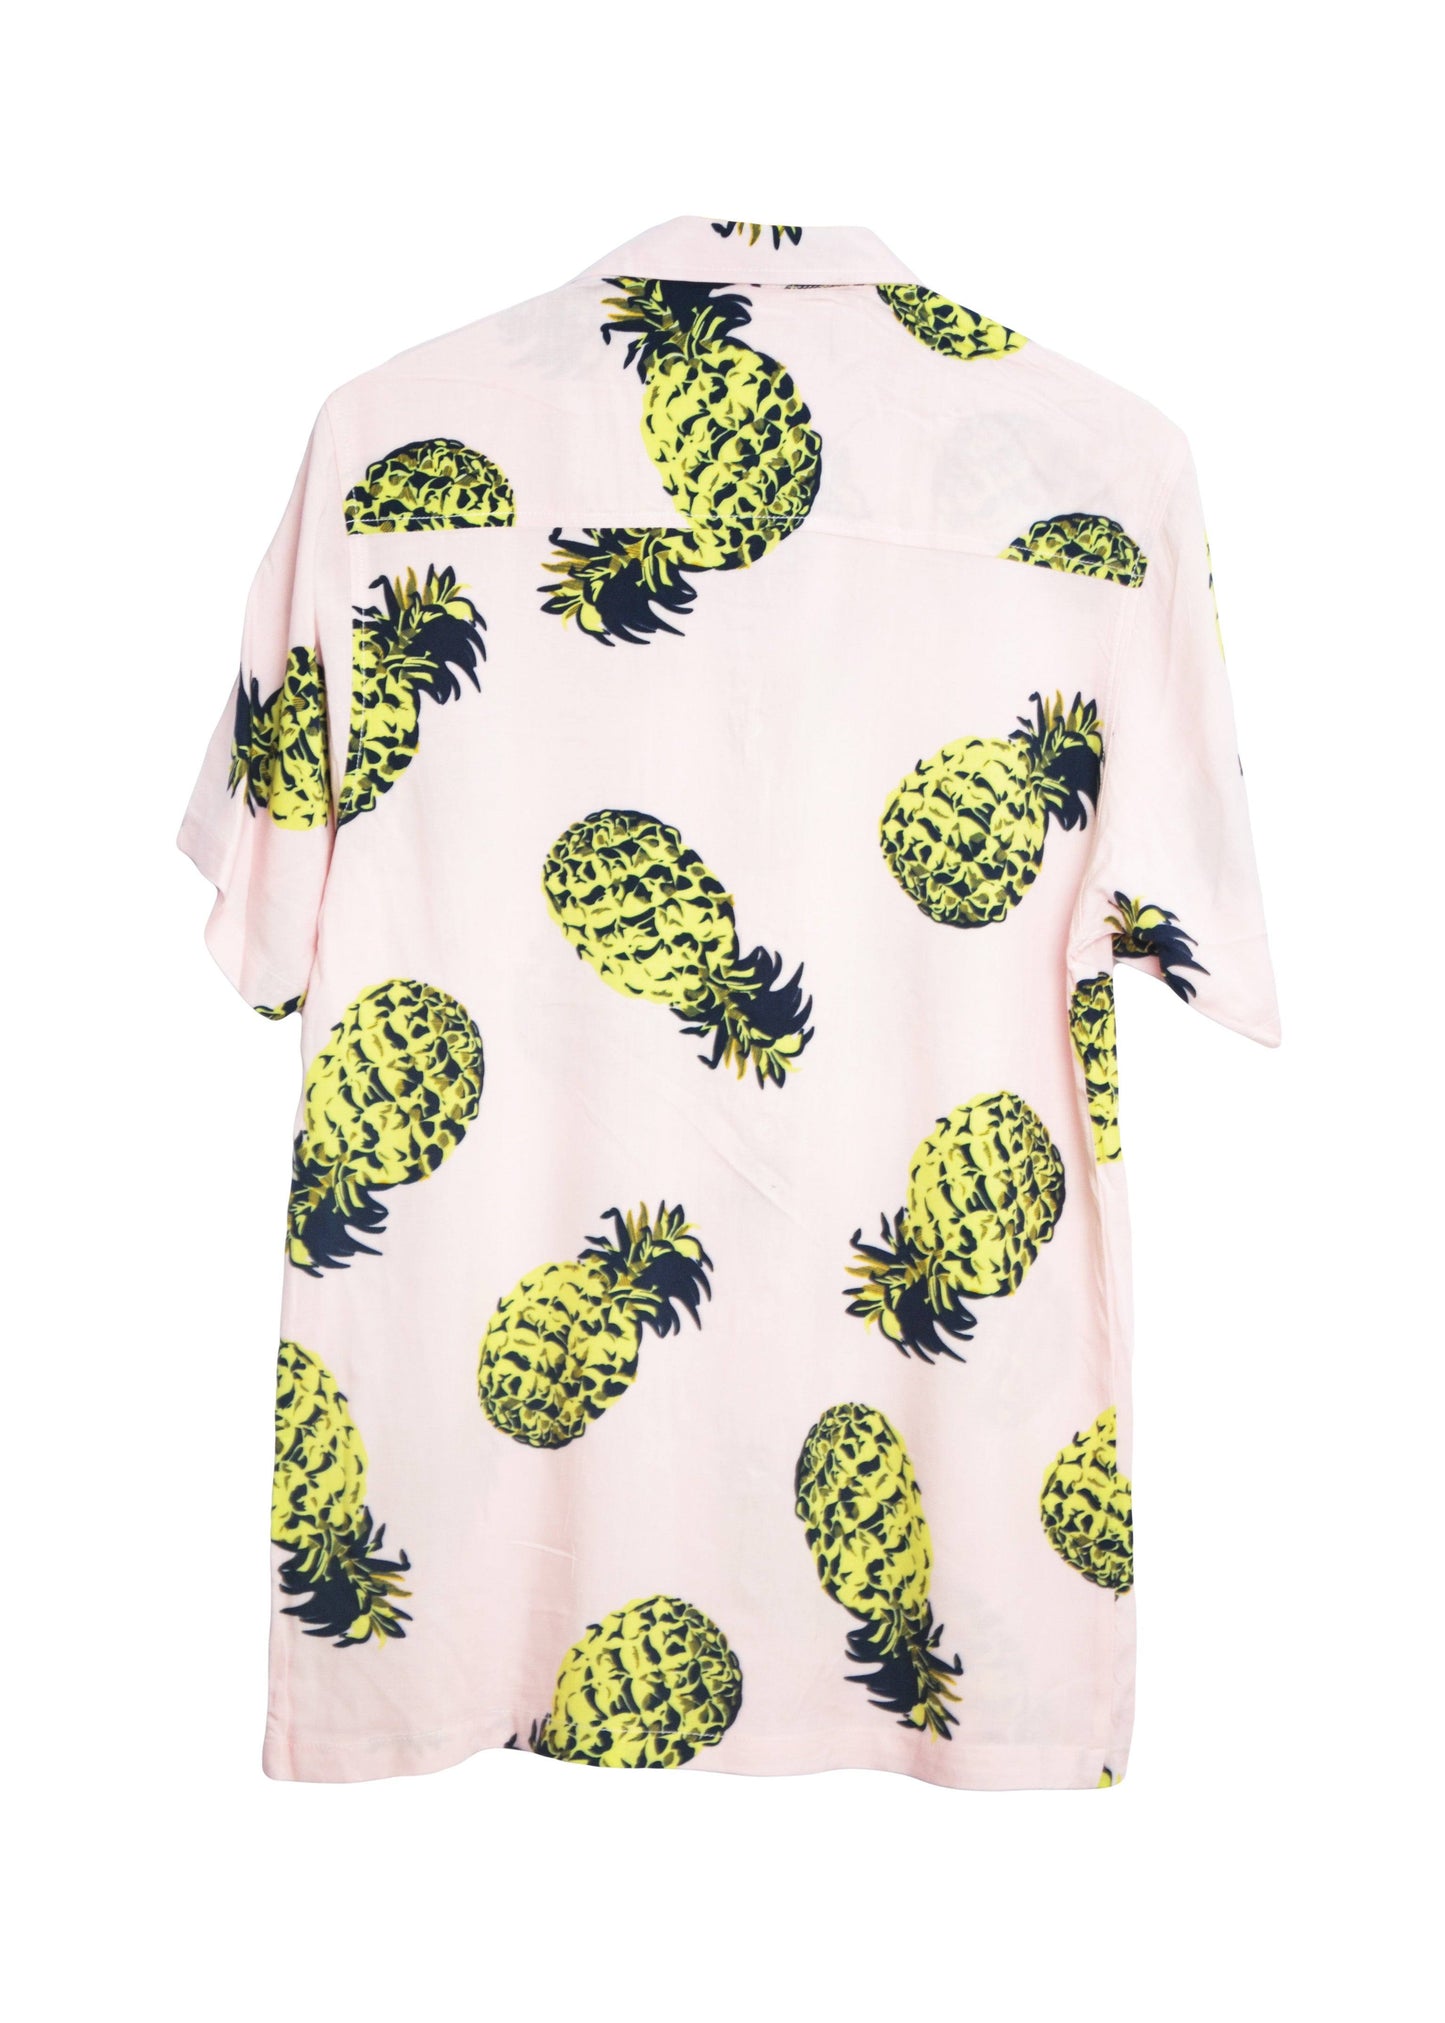 Vue dos chemise hawaienne homme rose imprimé ananas - glboutik.com